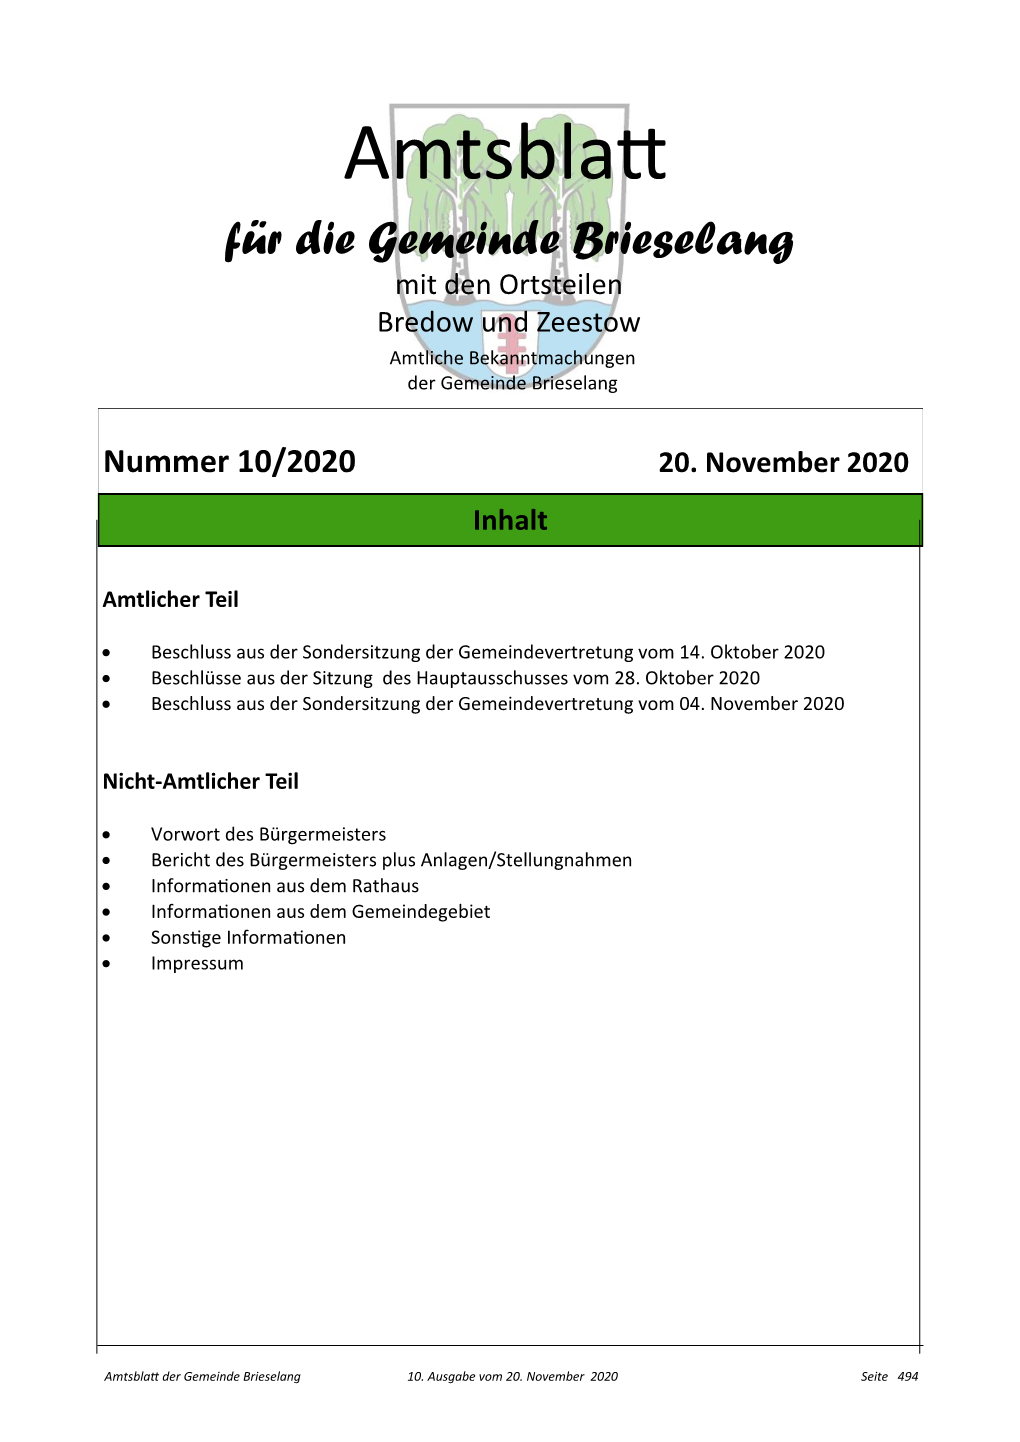 Amtsblatt Für Die Gemeinde Brieselang Mit Den Ortsteilen Bredow Und Zeestow Amtliche Bekanntmachungen Der Gemeinde Brieselang